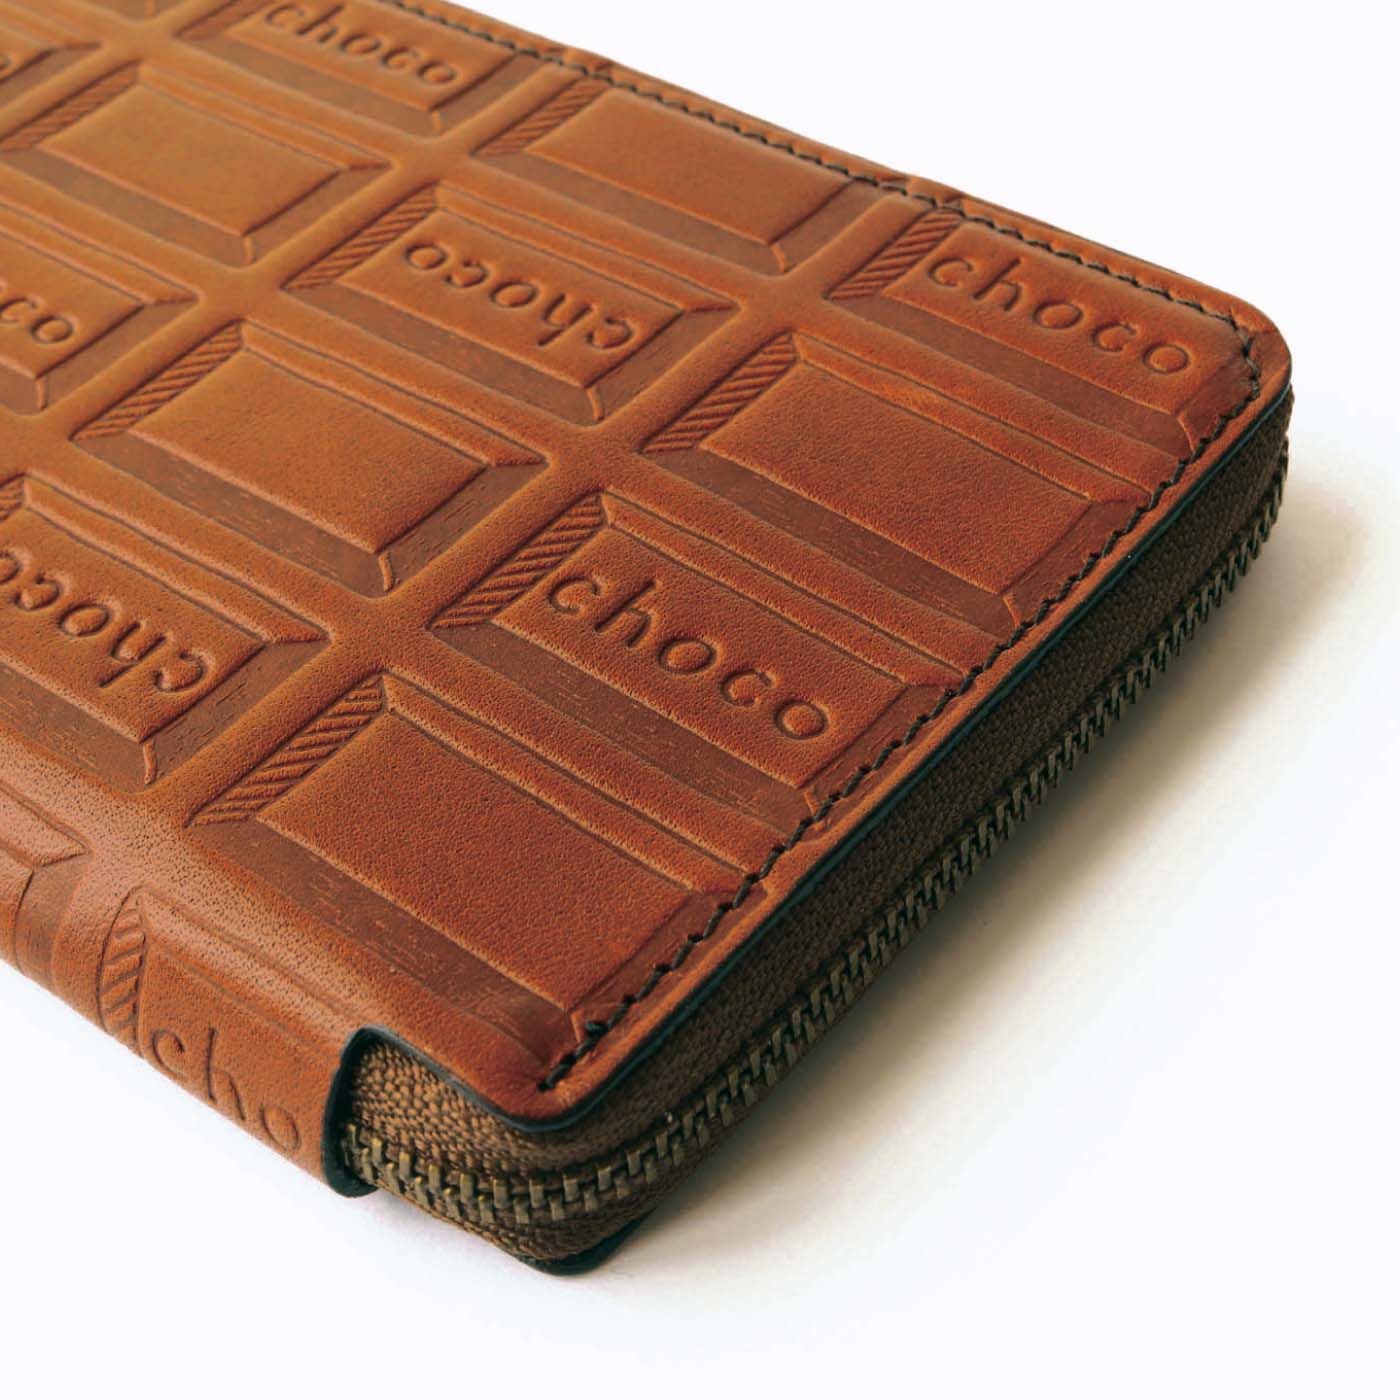 色: チョコ[アブラサス] 薄い財布 レザー 薄型 日本製 チョコ